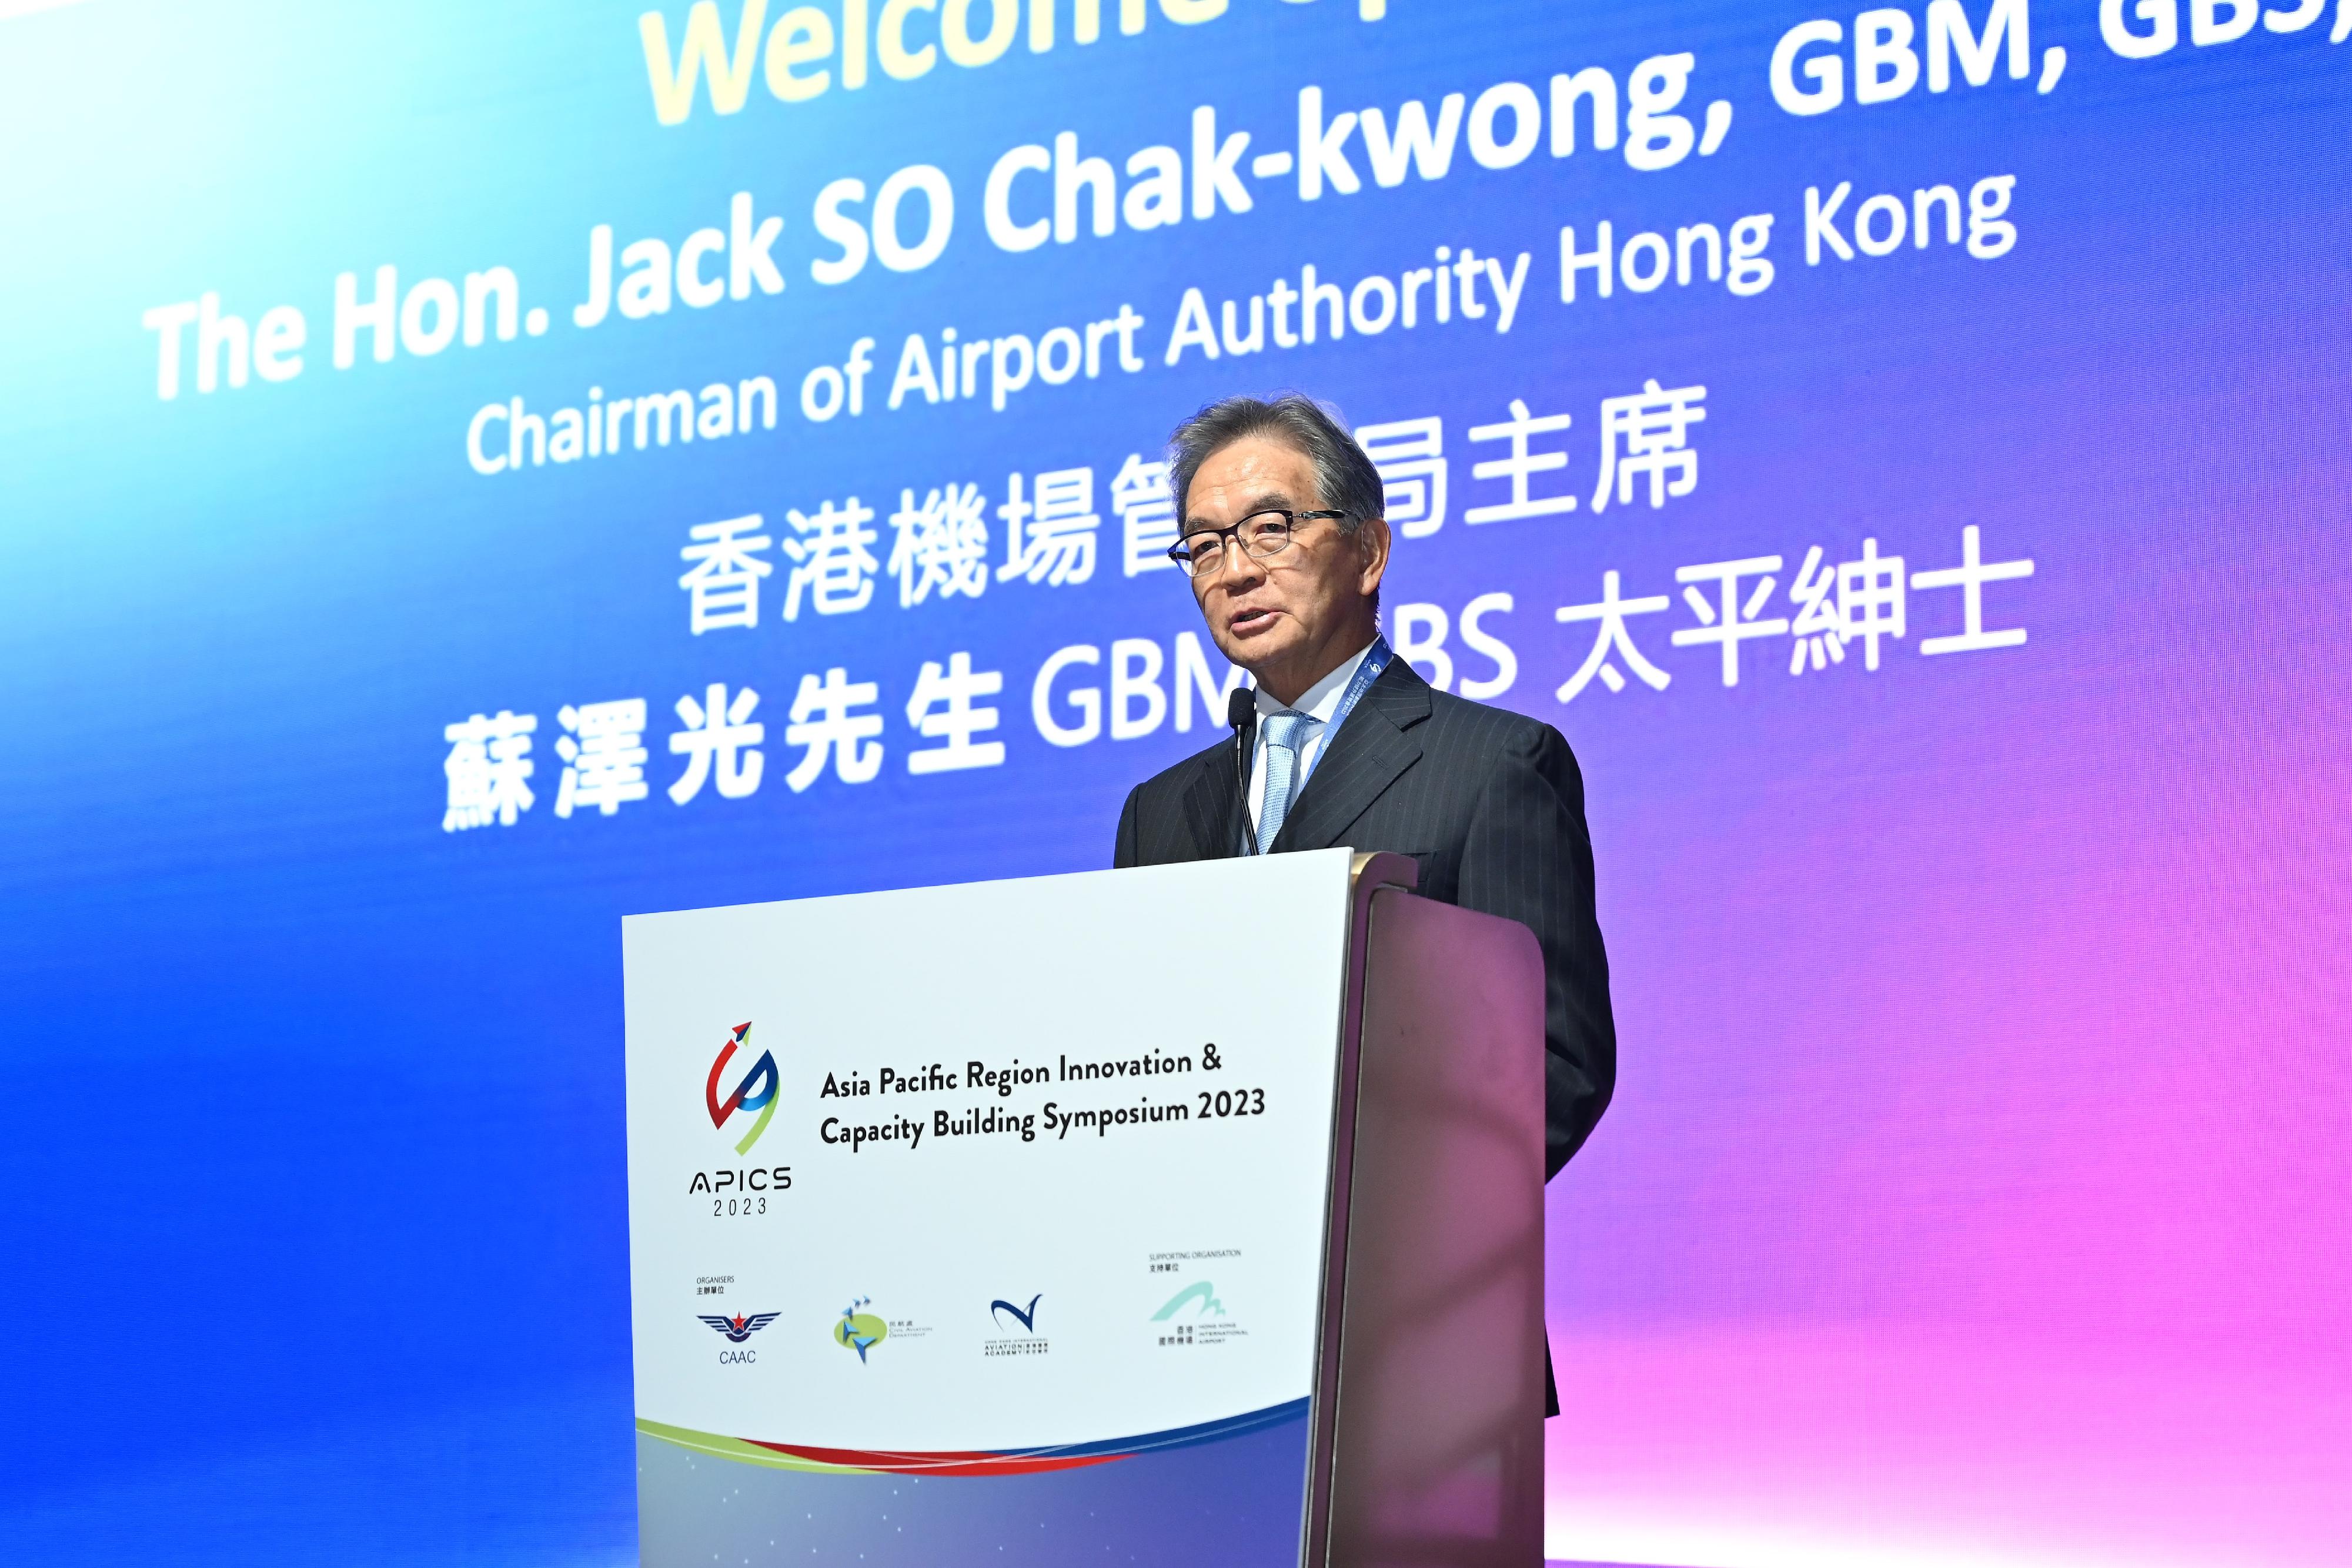 「2023亞太地區創新科技及能力提升展覽會」（展覽會）今日（十二月十四日）揭幕。香港機場管理局主席蘇澤光於展覽會開幕禮上致辭。

